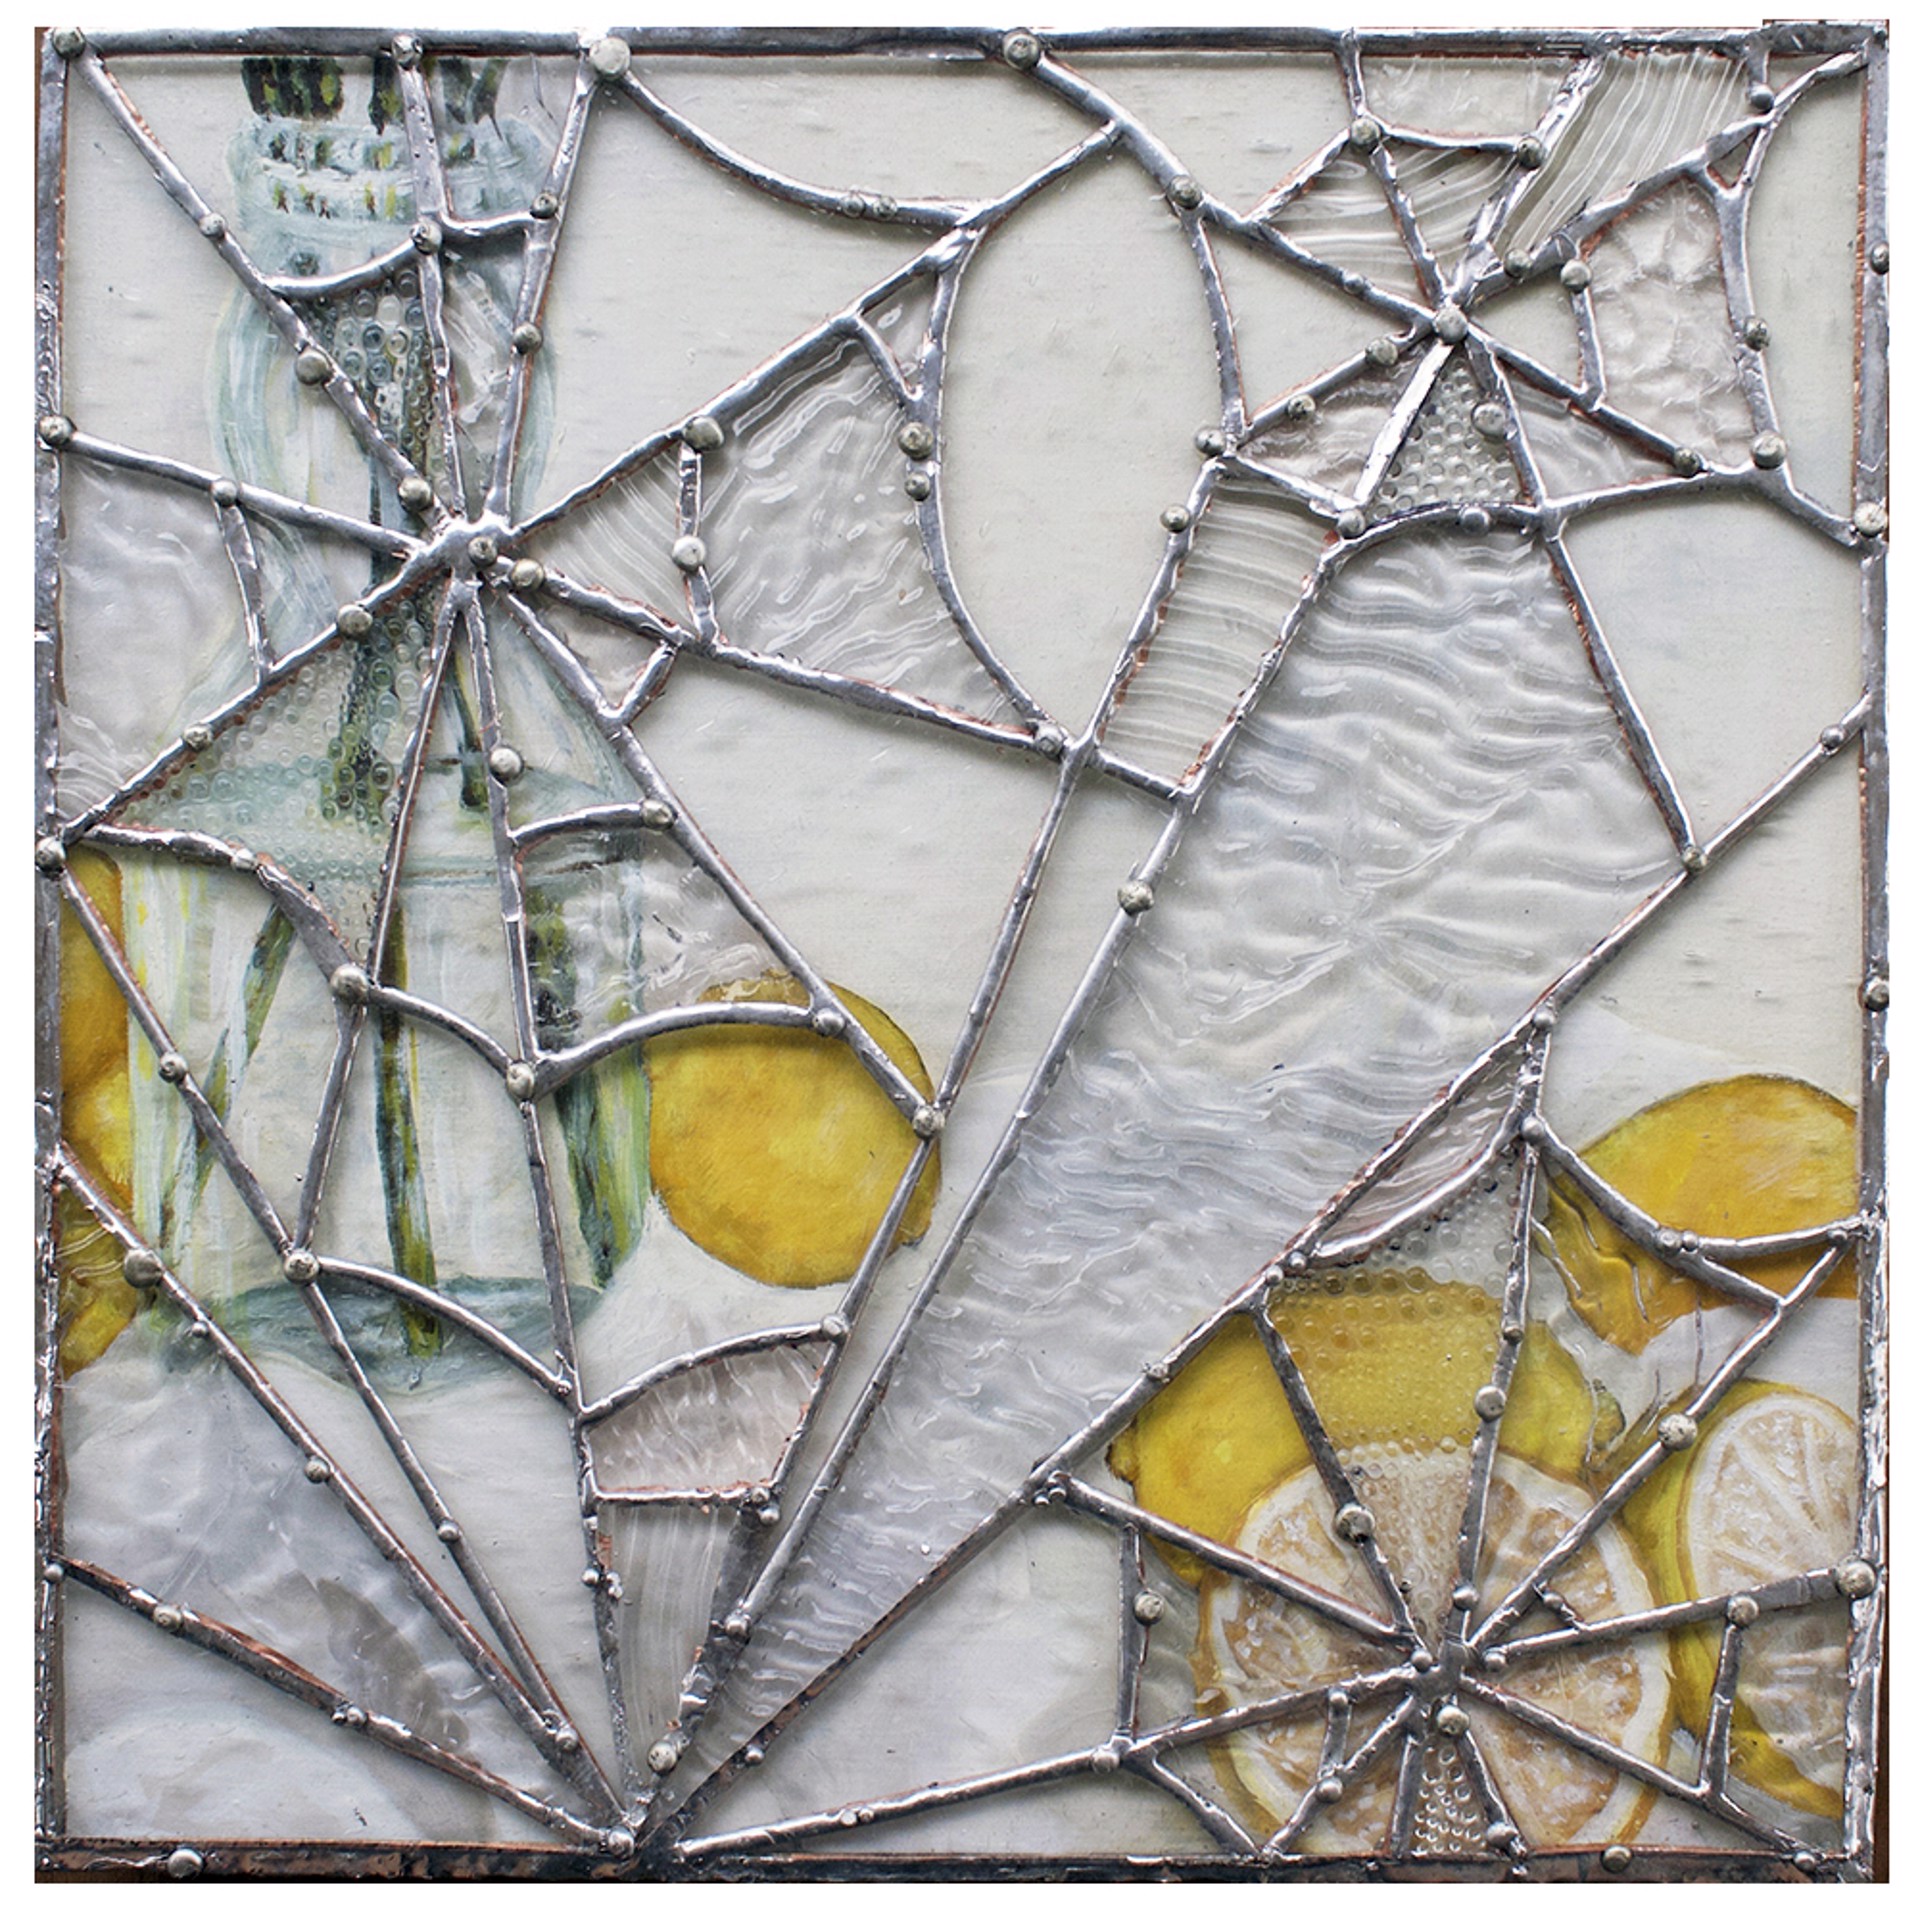 Lemons in Fragile Webs by Hayden Phelps